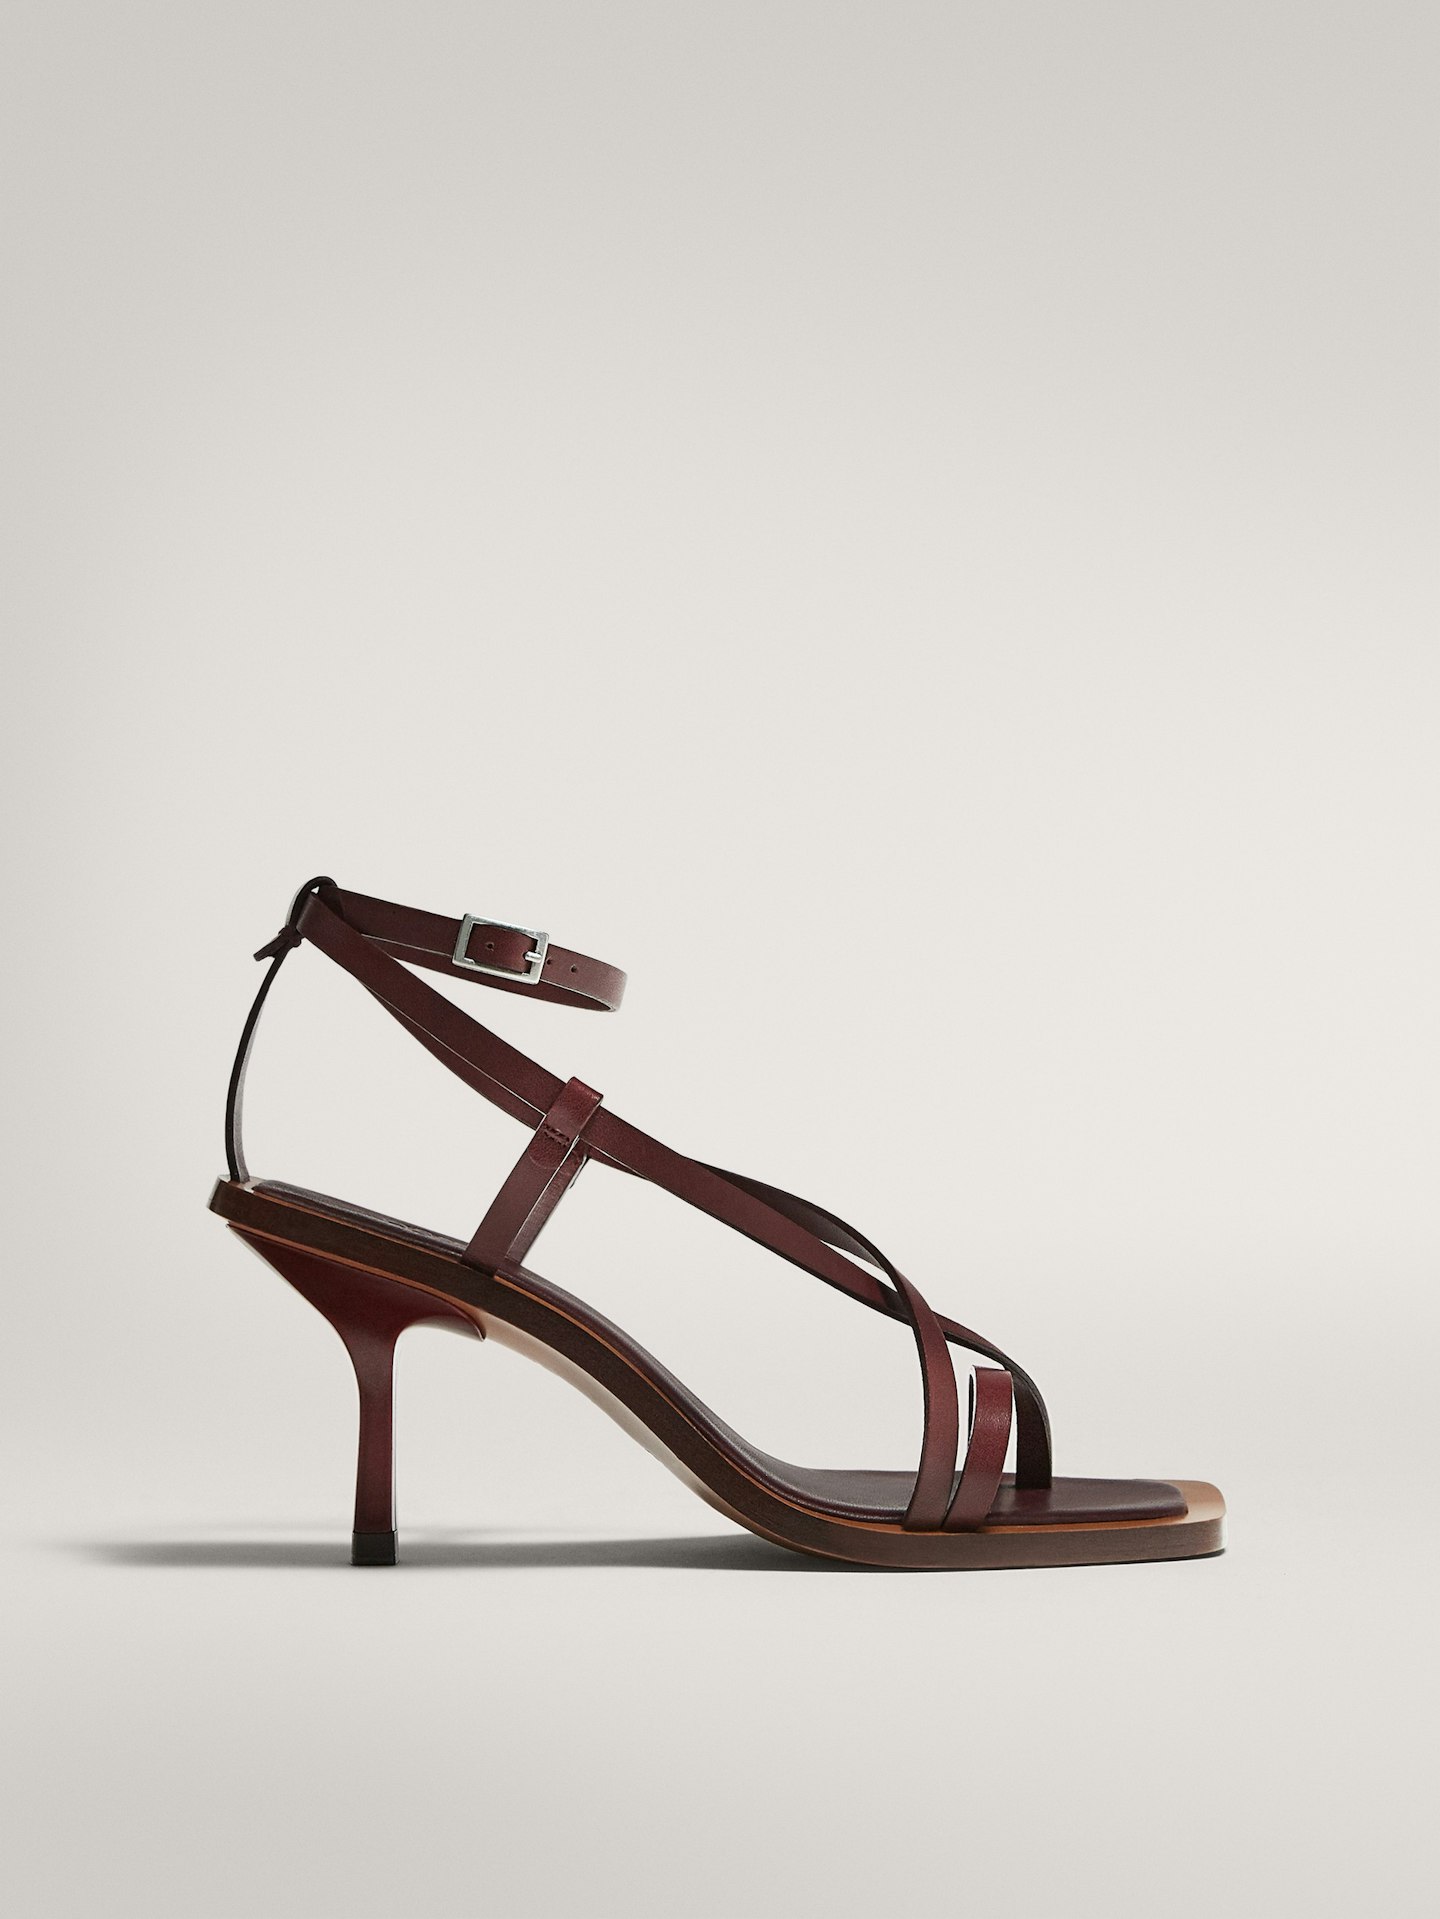 Massimo Dutti, Strappy Sandals,  £119